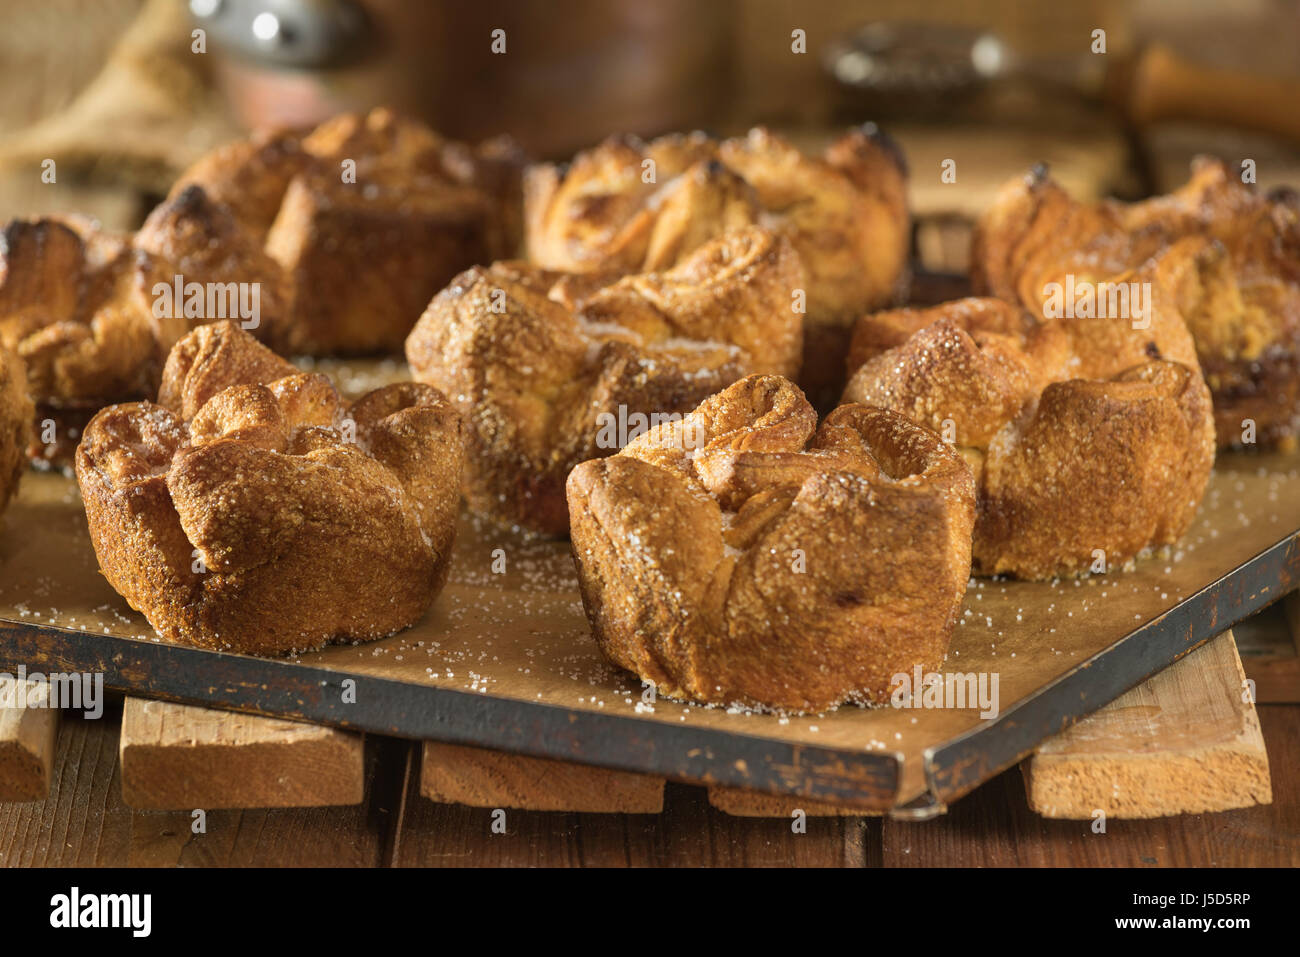 Kouign amann. Breton pastries. France Food Stock Photo